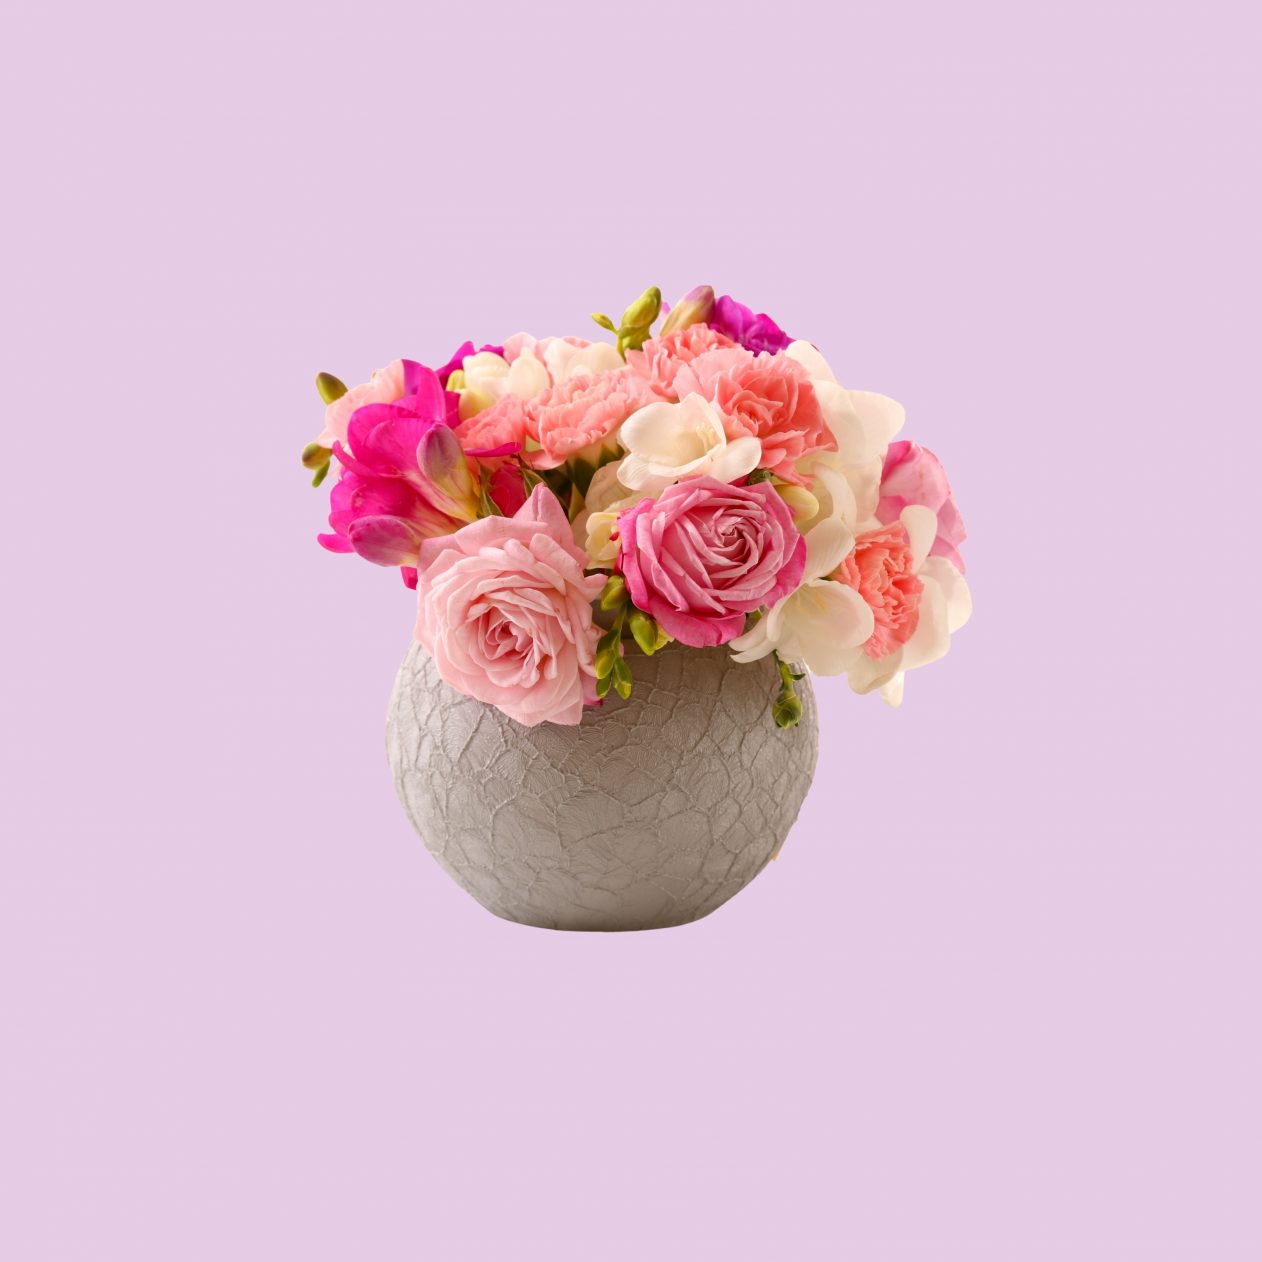 1262x1262 Parallax wallpaper 4k Vase Pink Roses Floral Pot iPad Wallpaper 1262x1262 pixels resolution